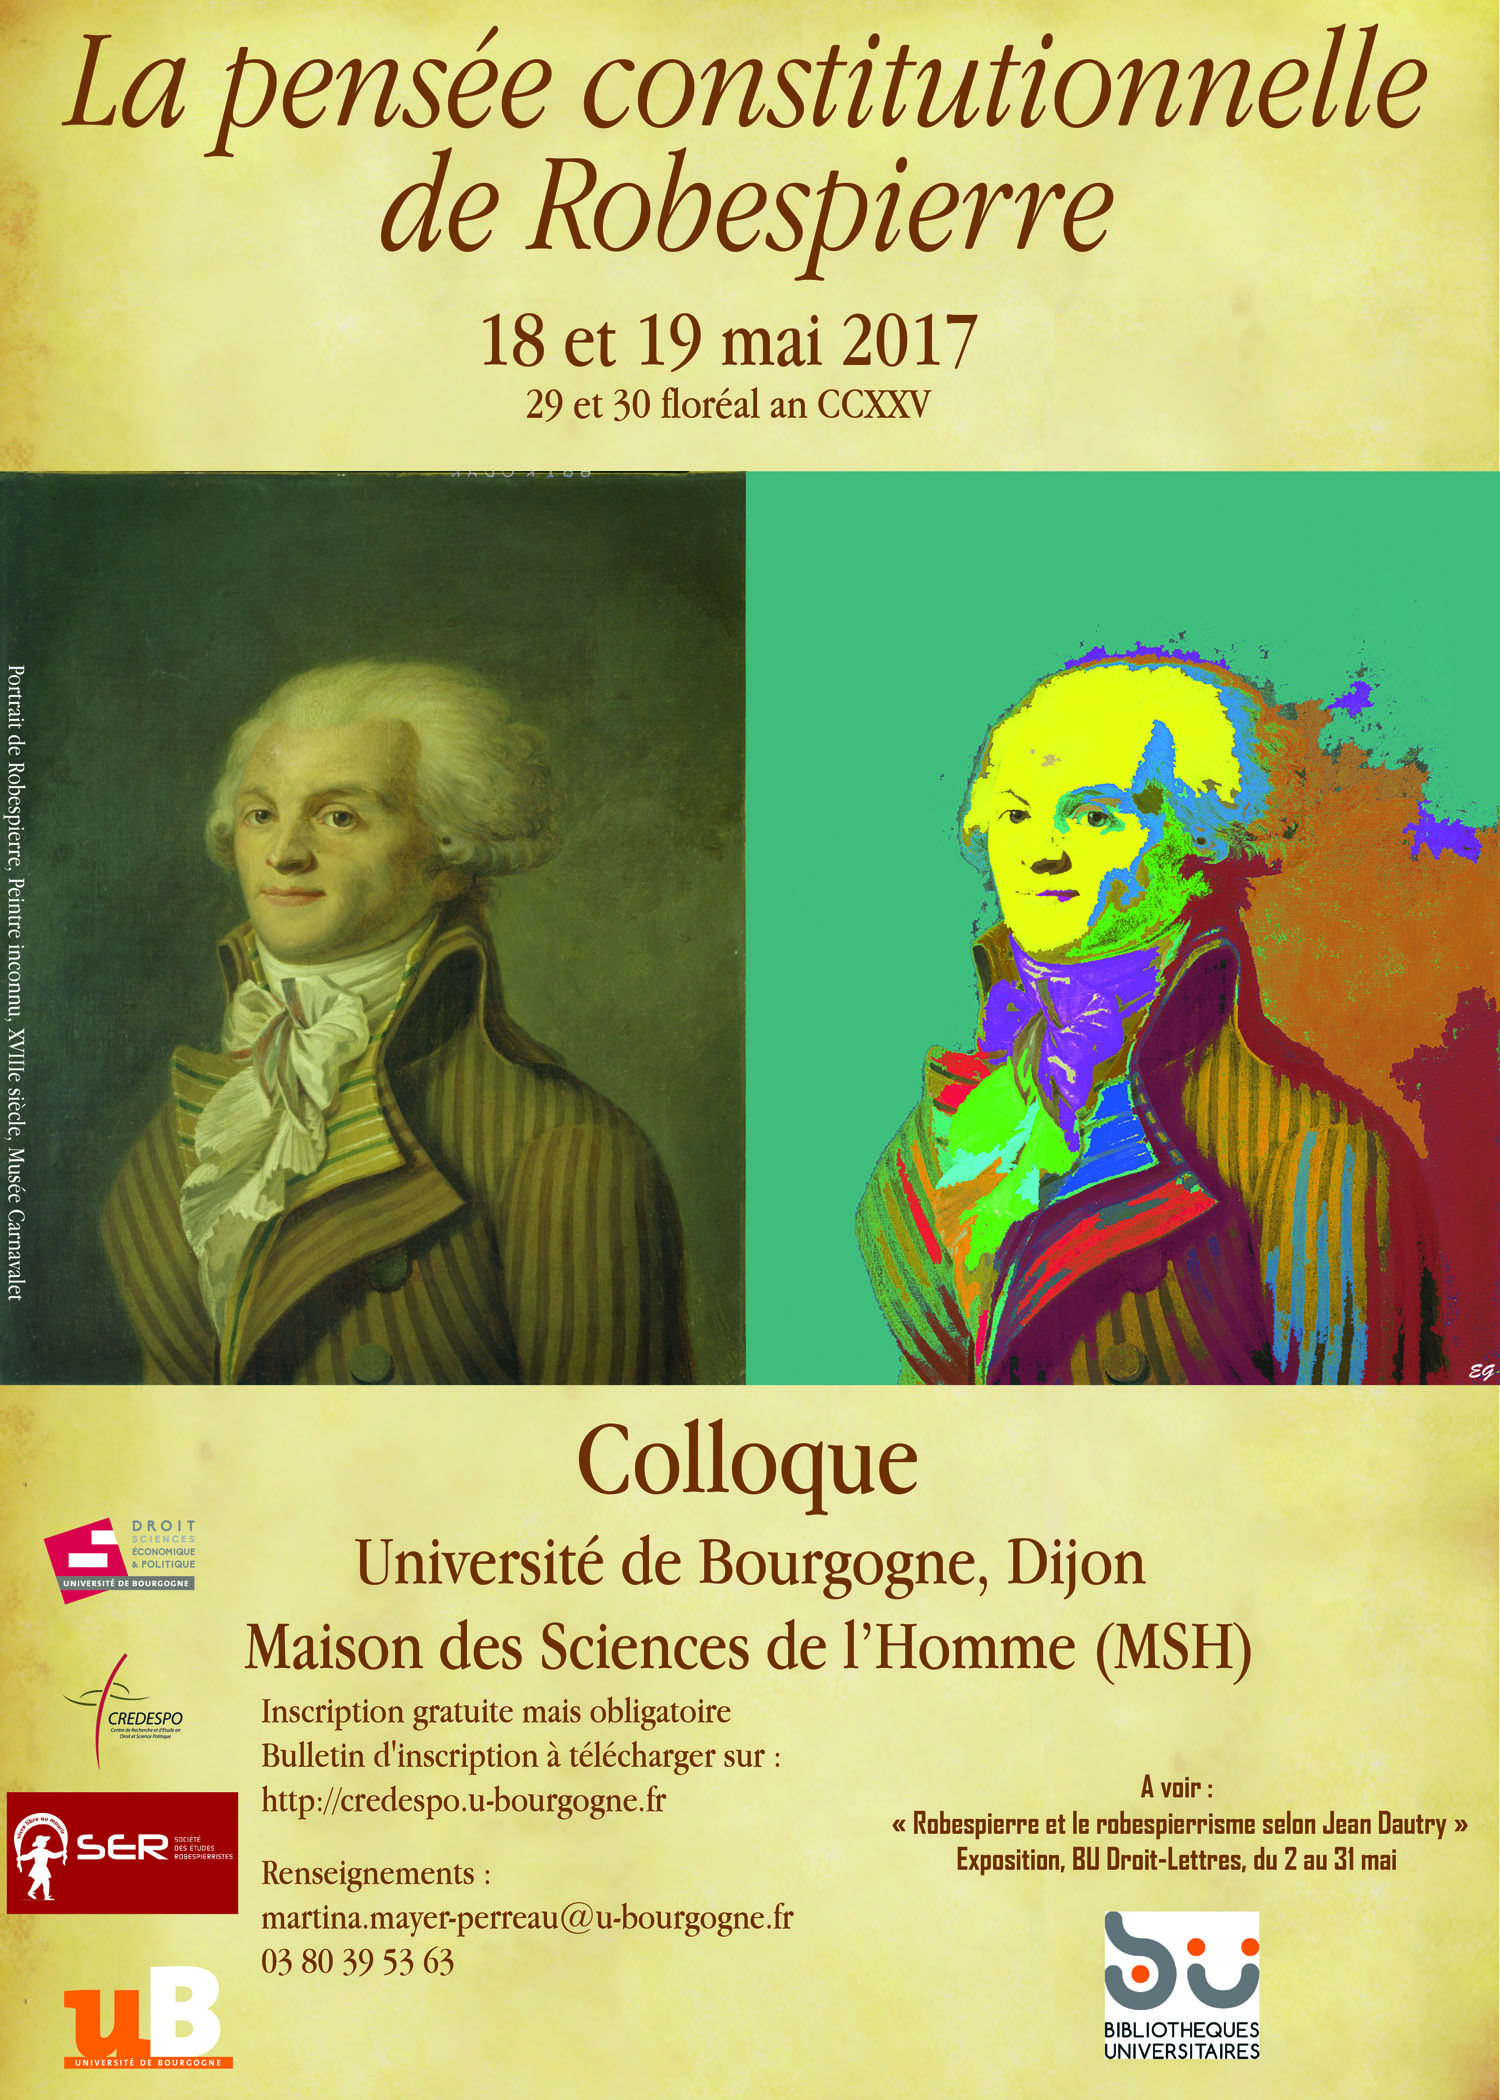 Affiche Robespierre versionfnale eg 27 01 2017taille reduit